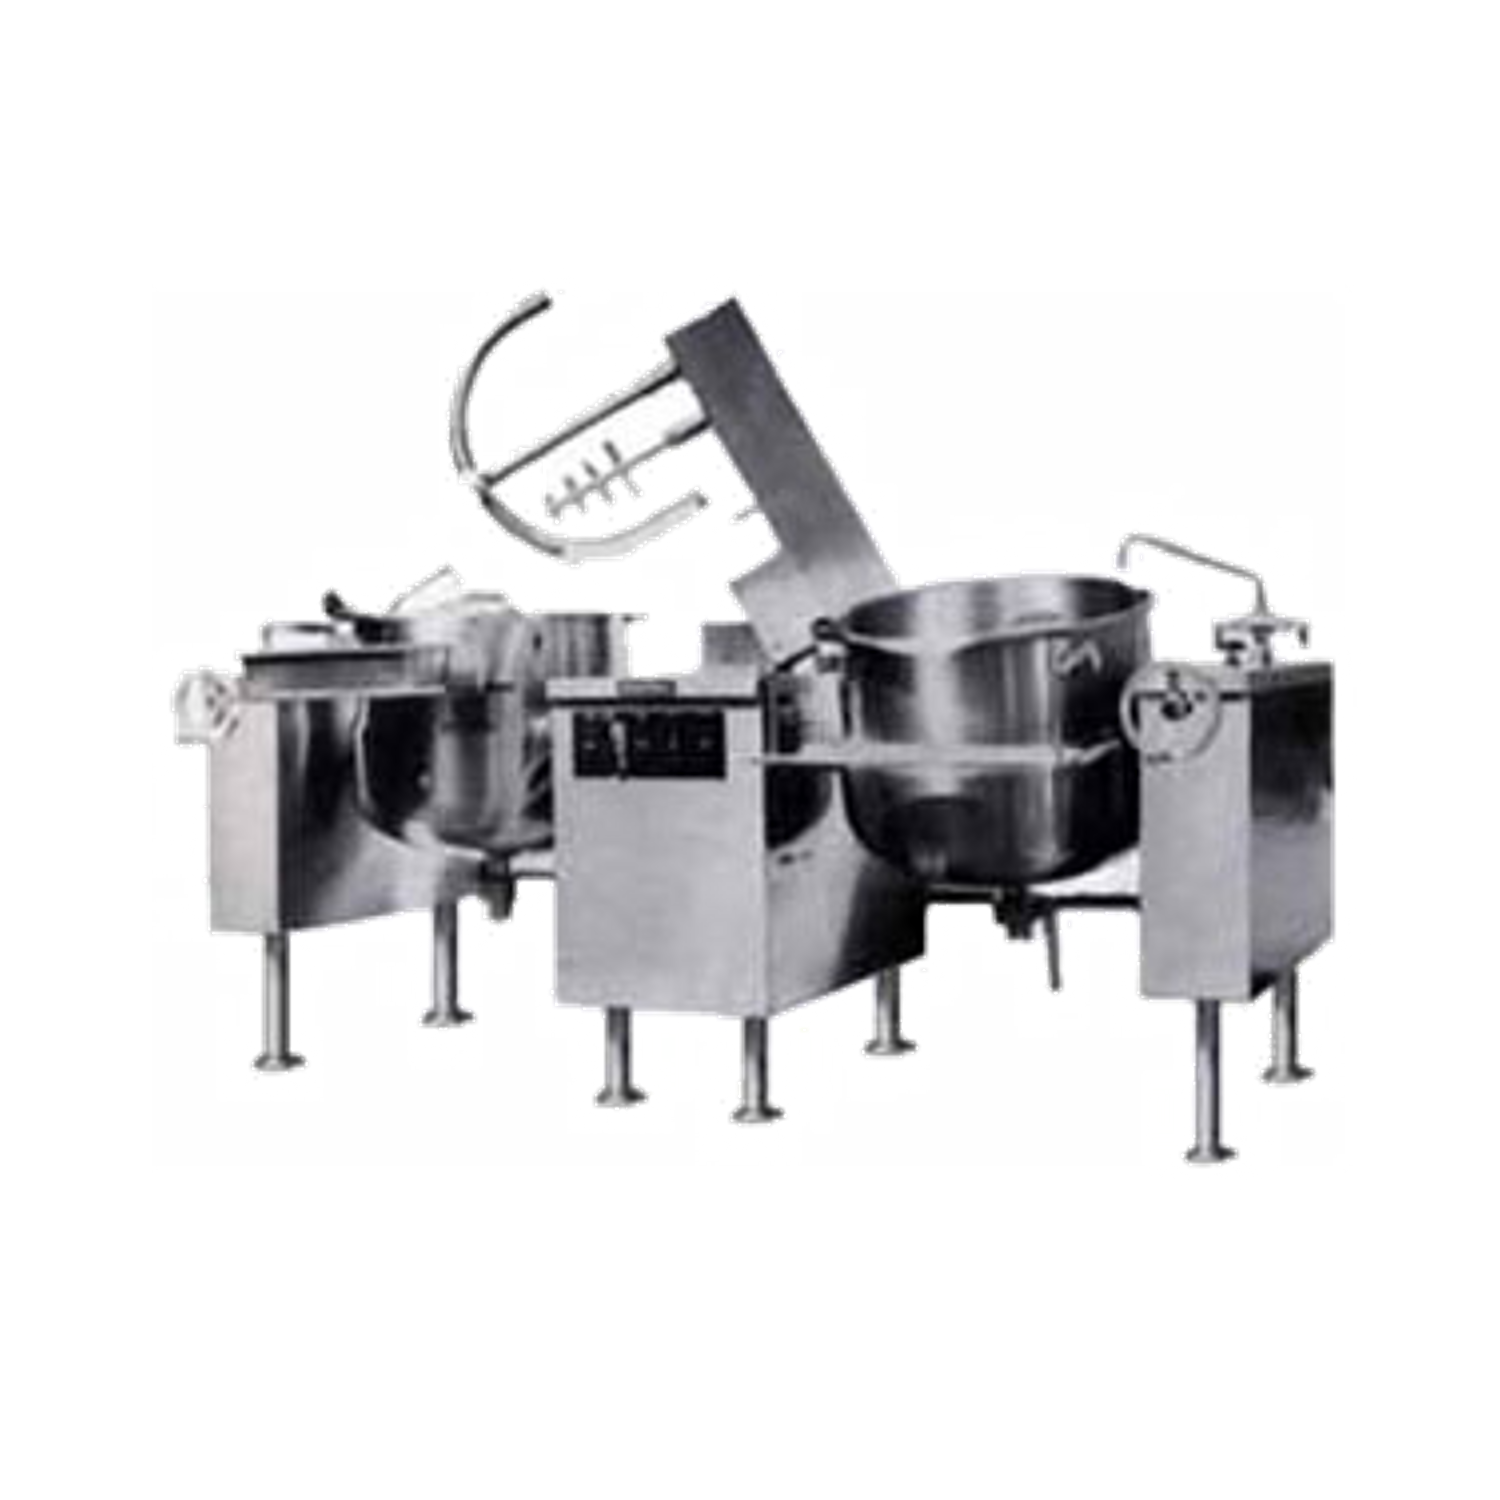 Market Forge Ftm 80l Kettle/mixer, Twin Unit, Direct - Market Forge Ftm(2)80l Kettle/mixer (2) 80 Gal. (1500x1500), Png Download